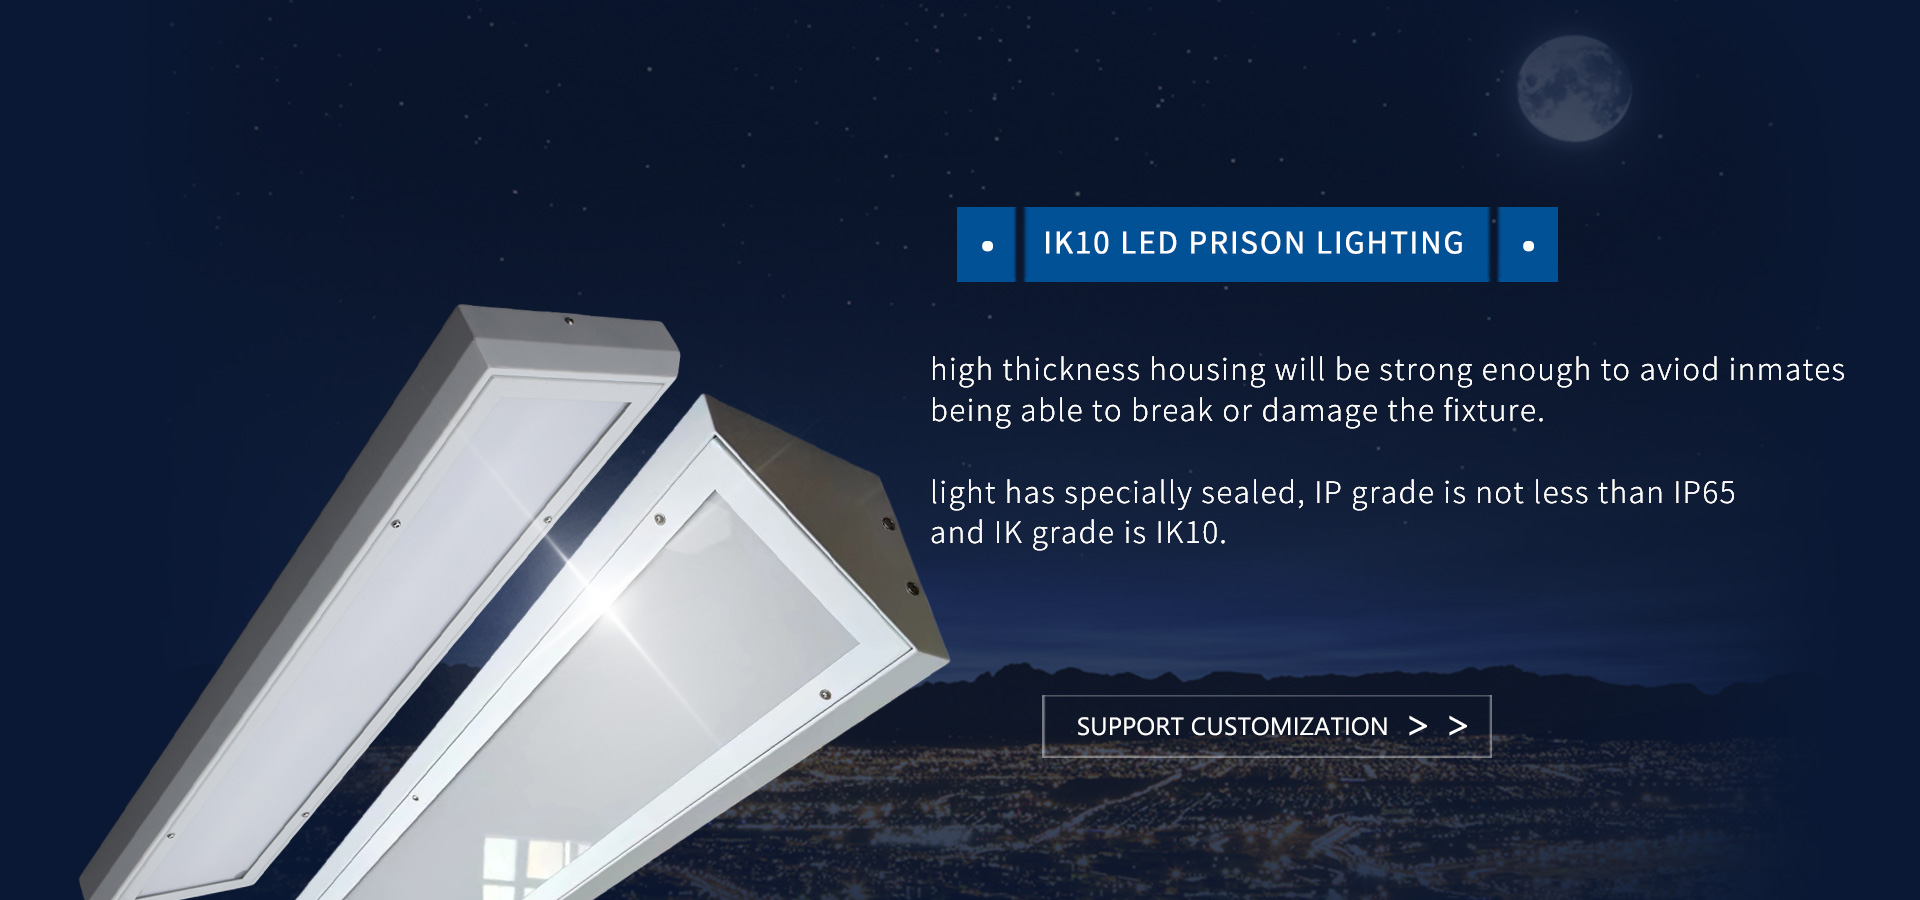 IK10 Led Prison Lighting